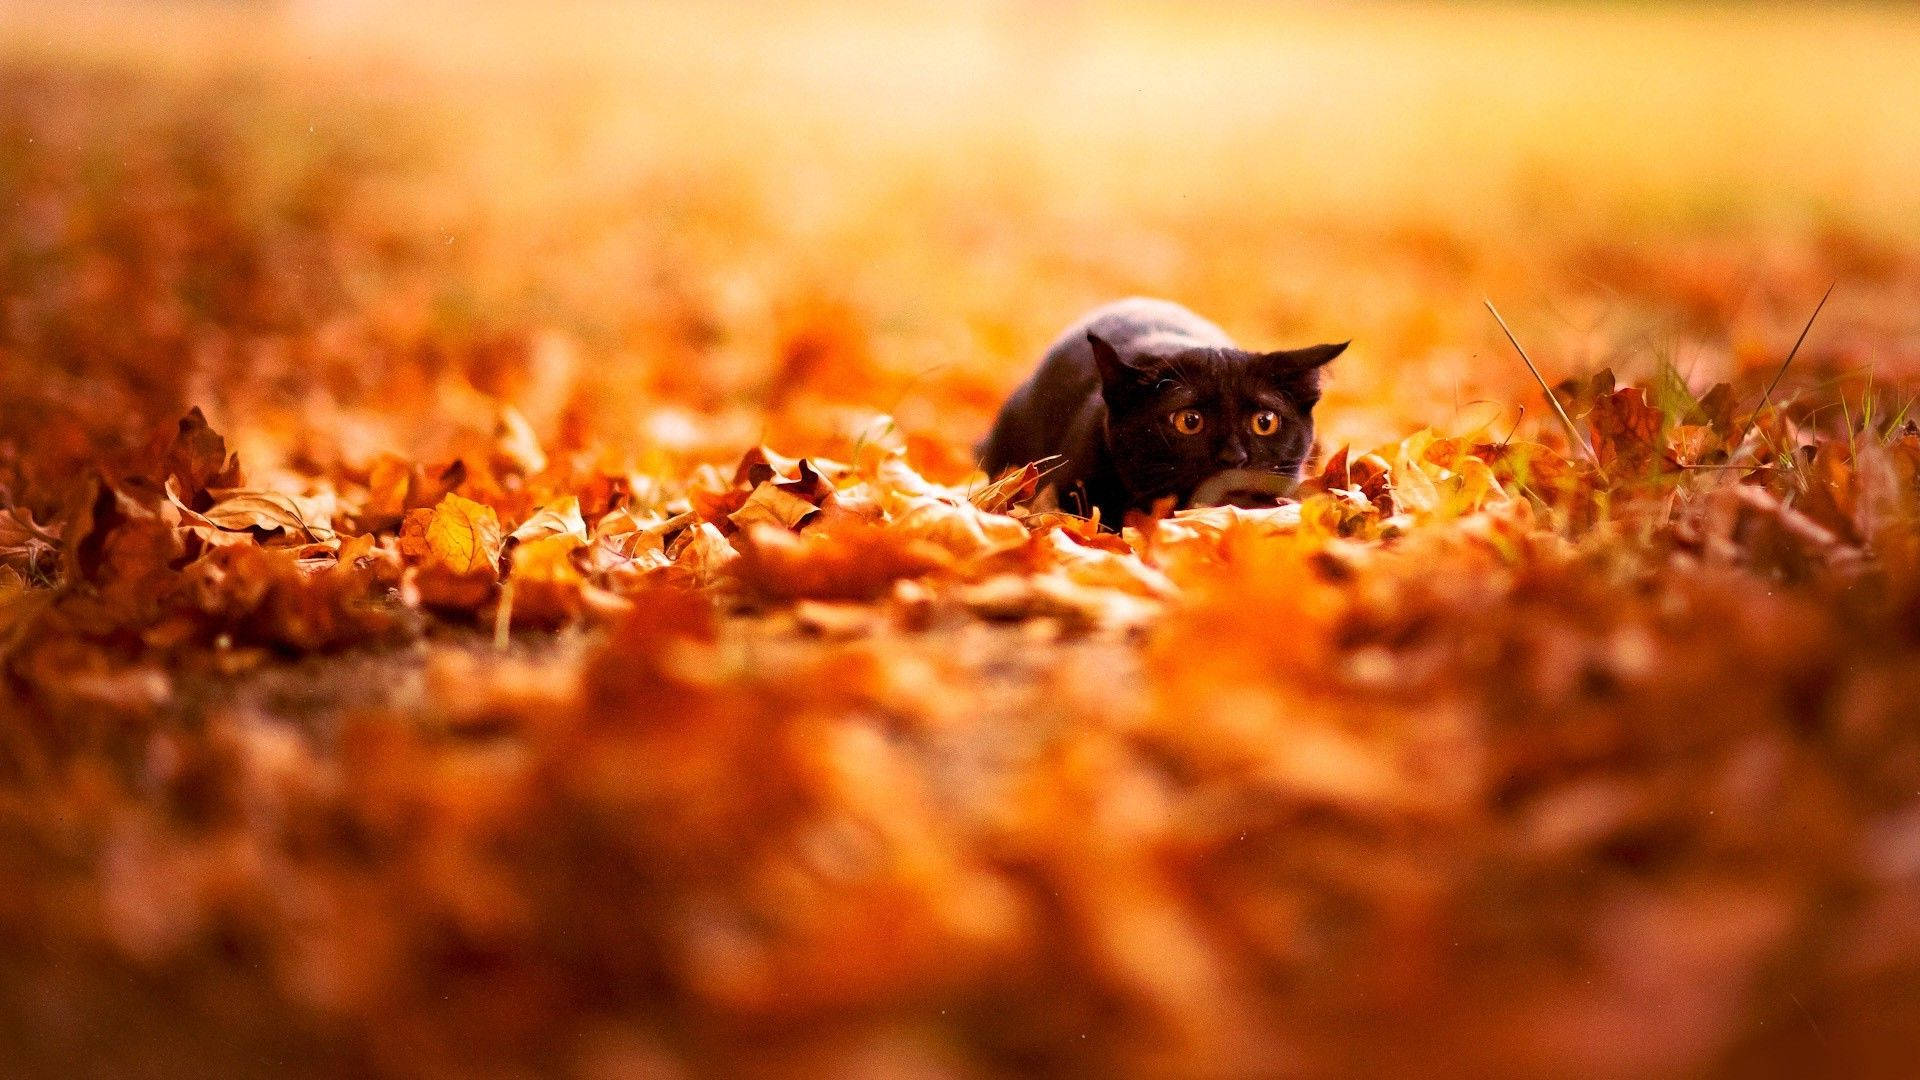 Download Black Cat In Fall Season Wallpaper